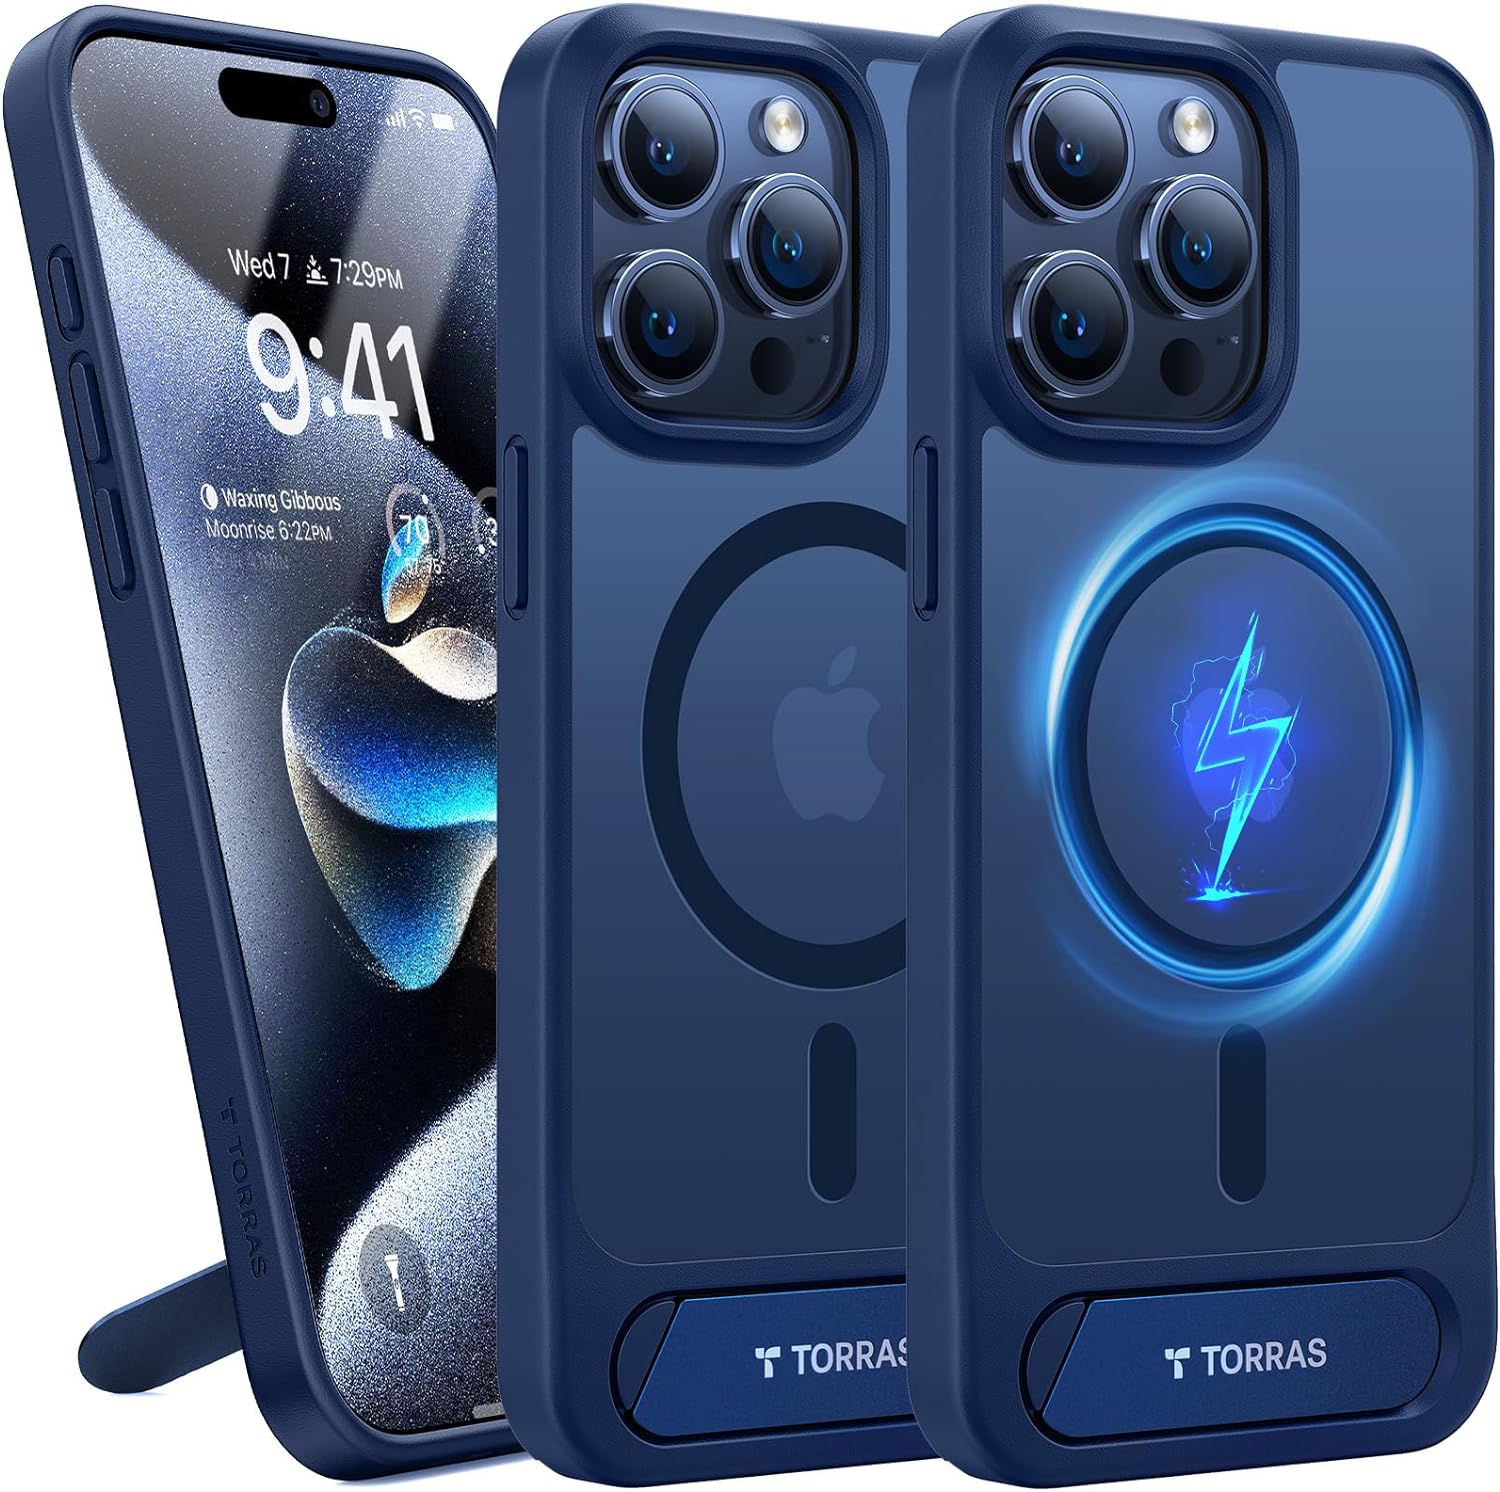 Trois coques Torras bleu marine pour téléphone; une de face inclinée de 20 degrés avec béquille visible, les deux autres de dos avec béquille rentrée, symbole MagSafe et objectifs de caméra visibles.